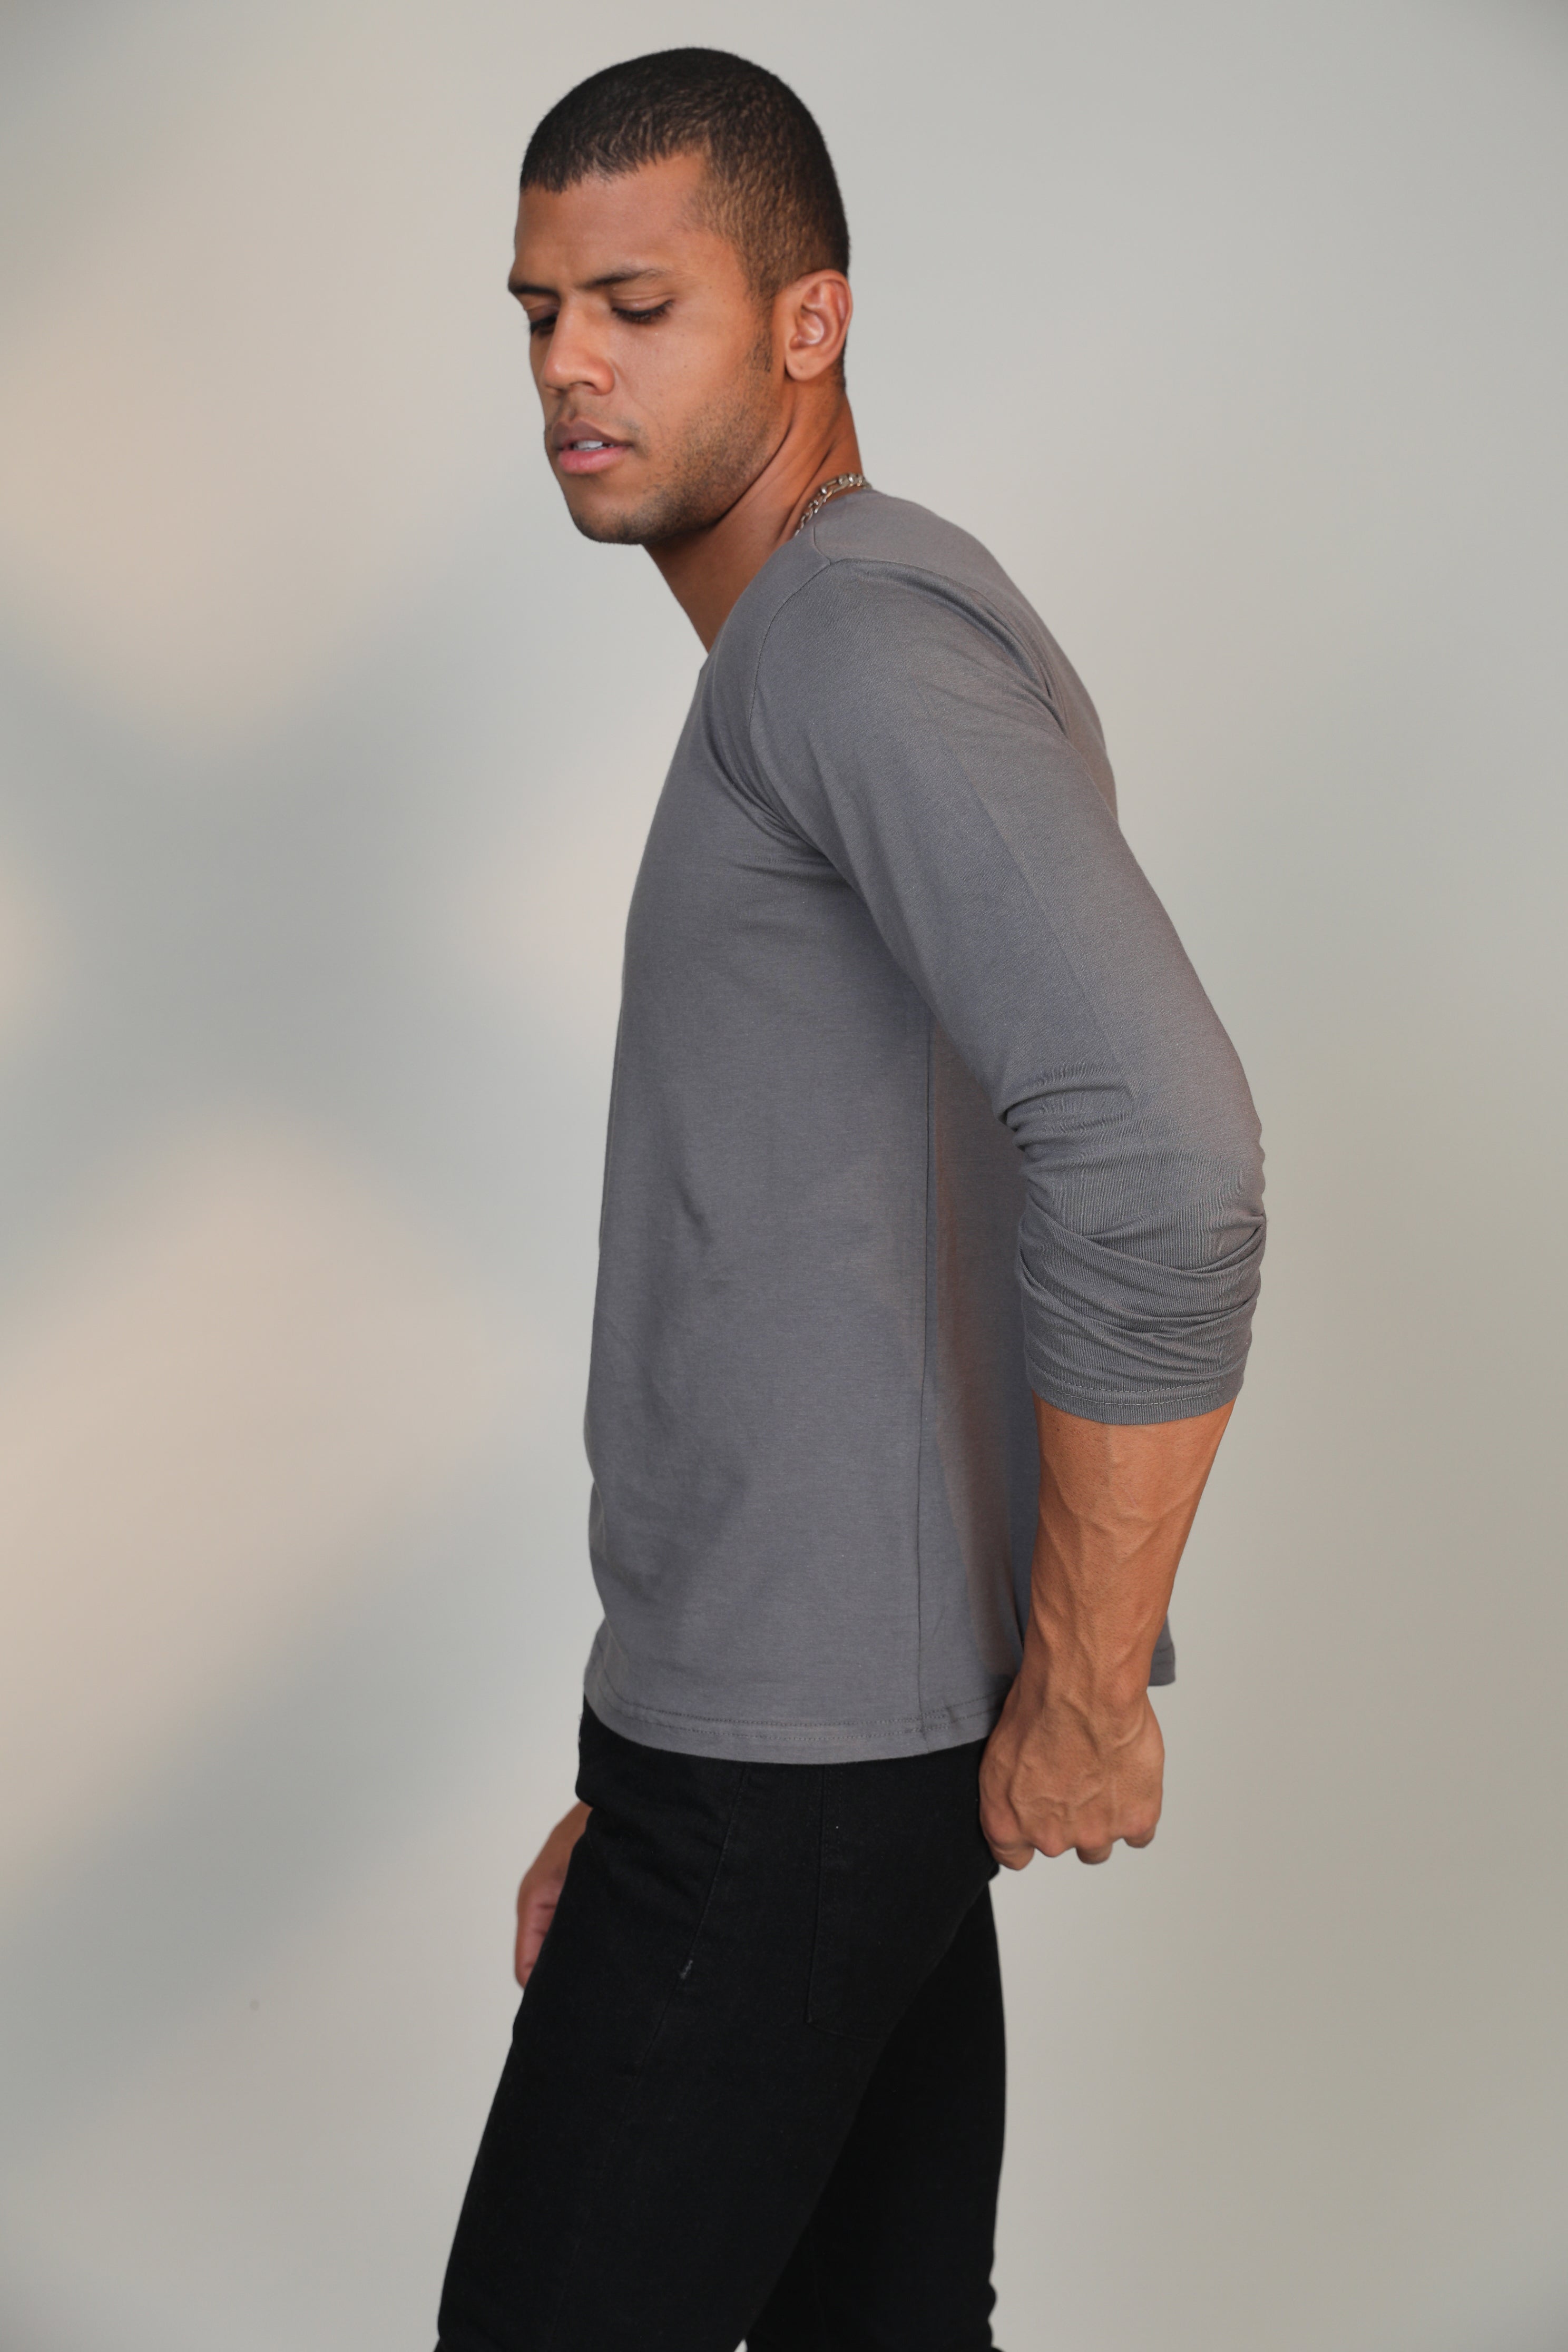 Melange Grey- Full sleeve t-shirt